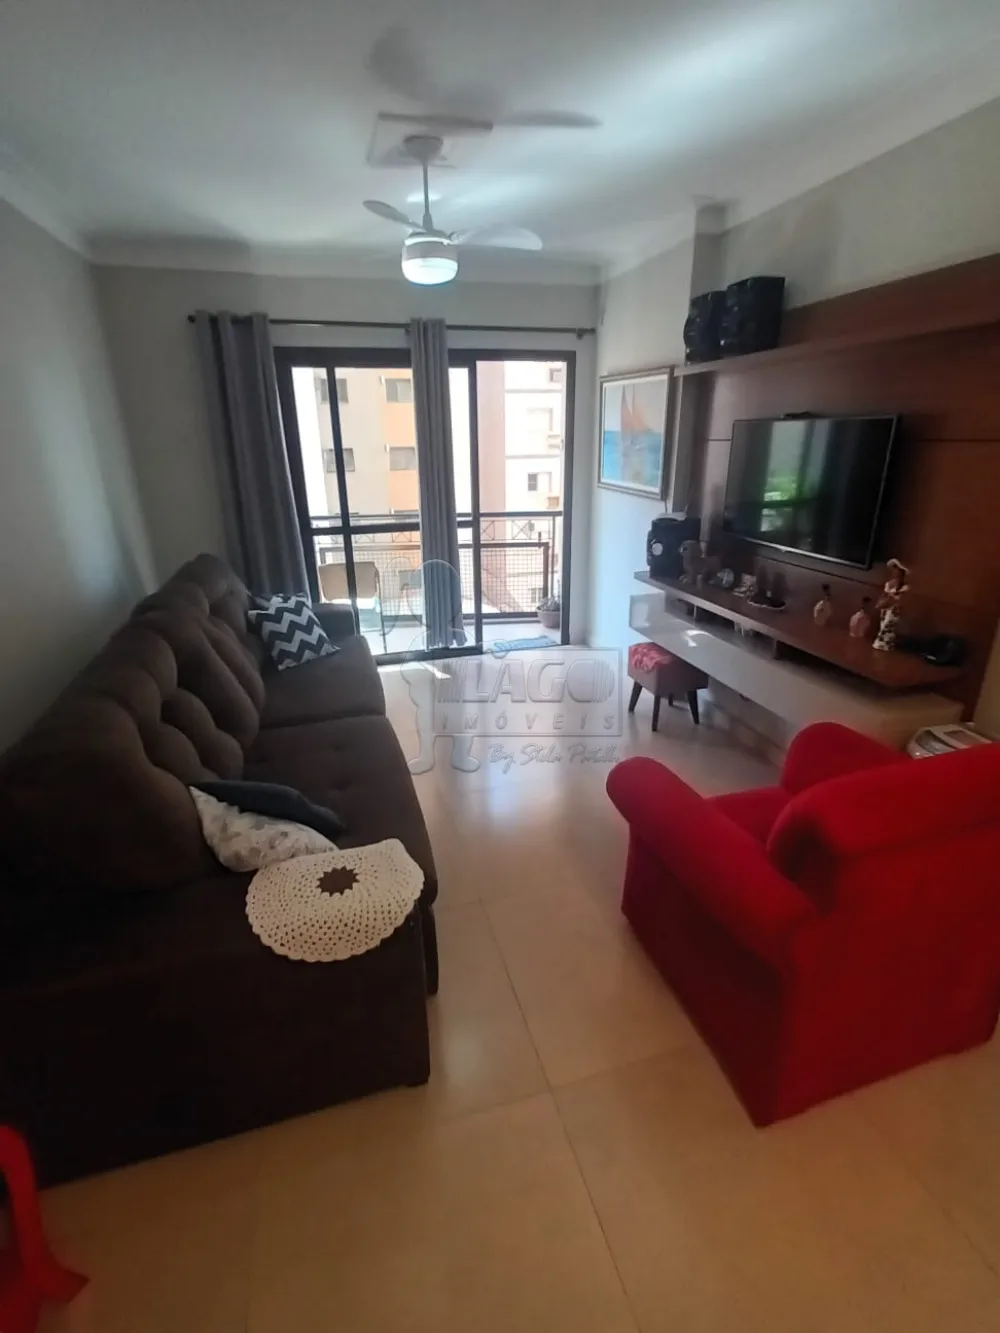 Comprar Apartamento / Padrão em Ribeirão Preto R$ 480.000,00 - Foto 2